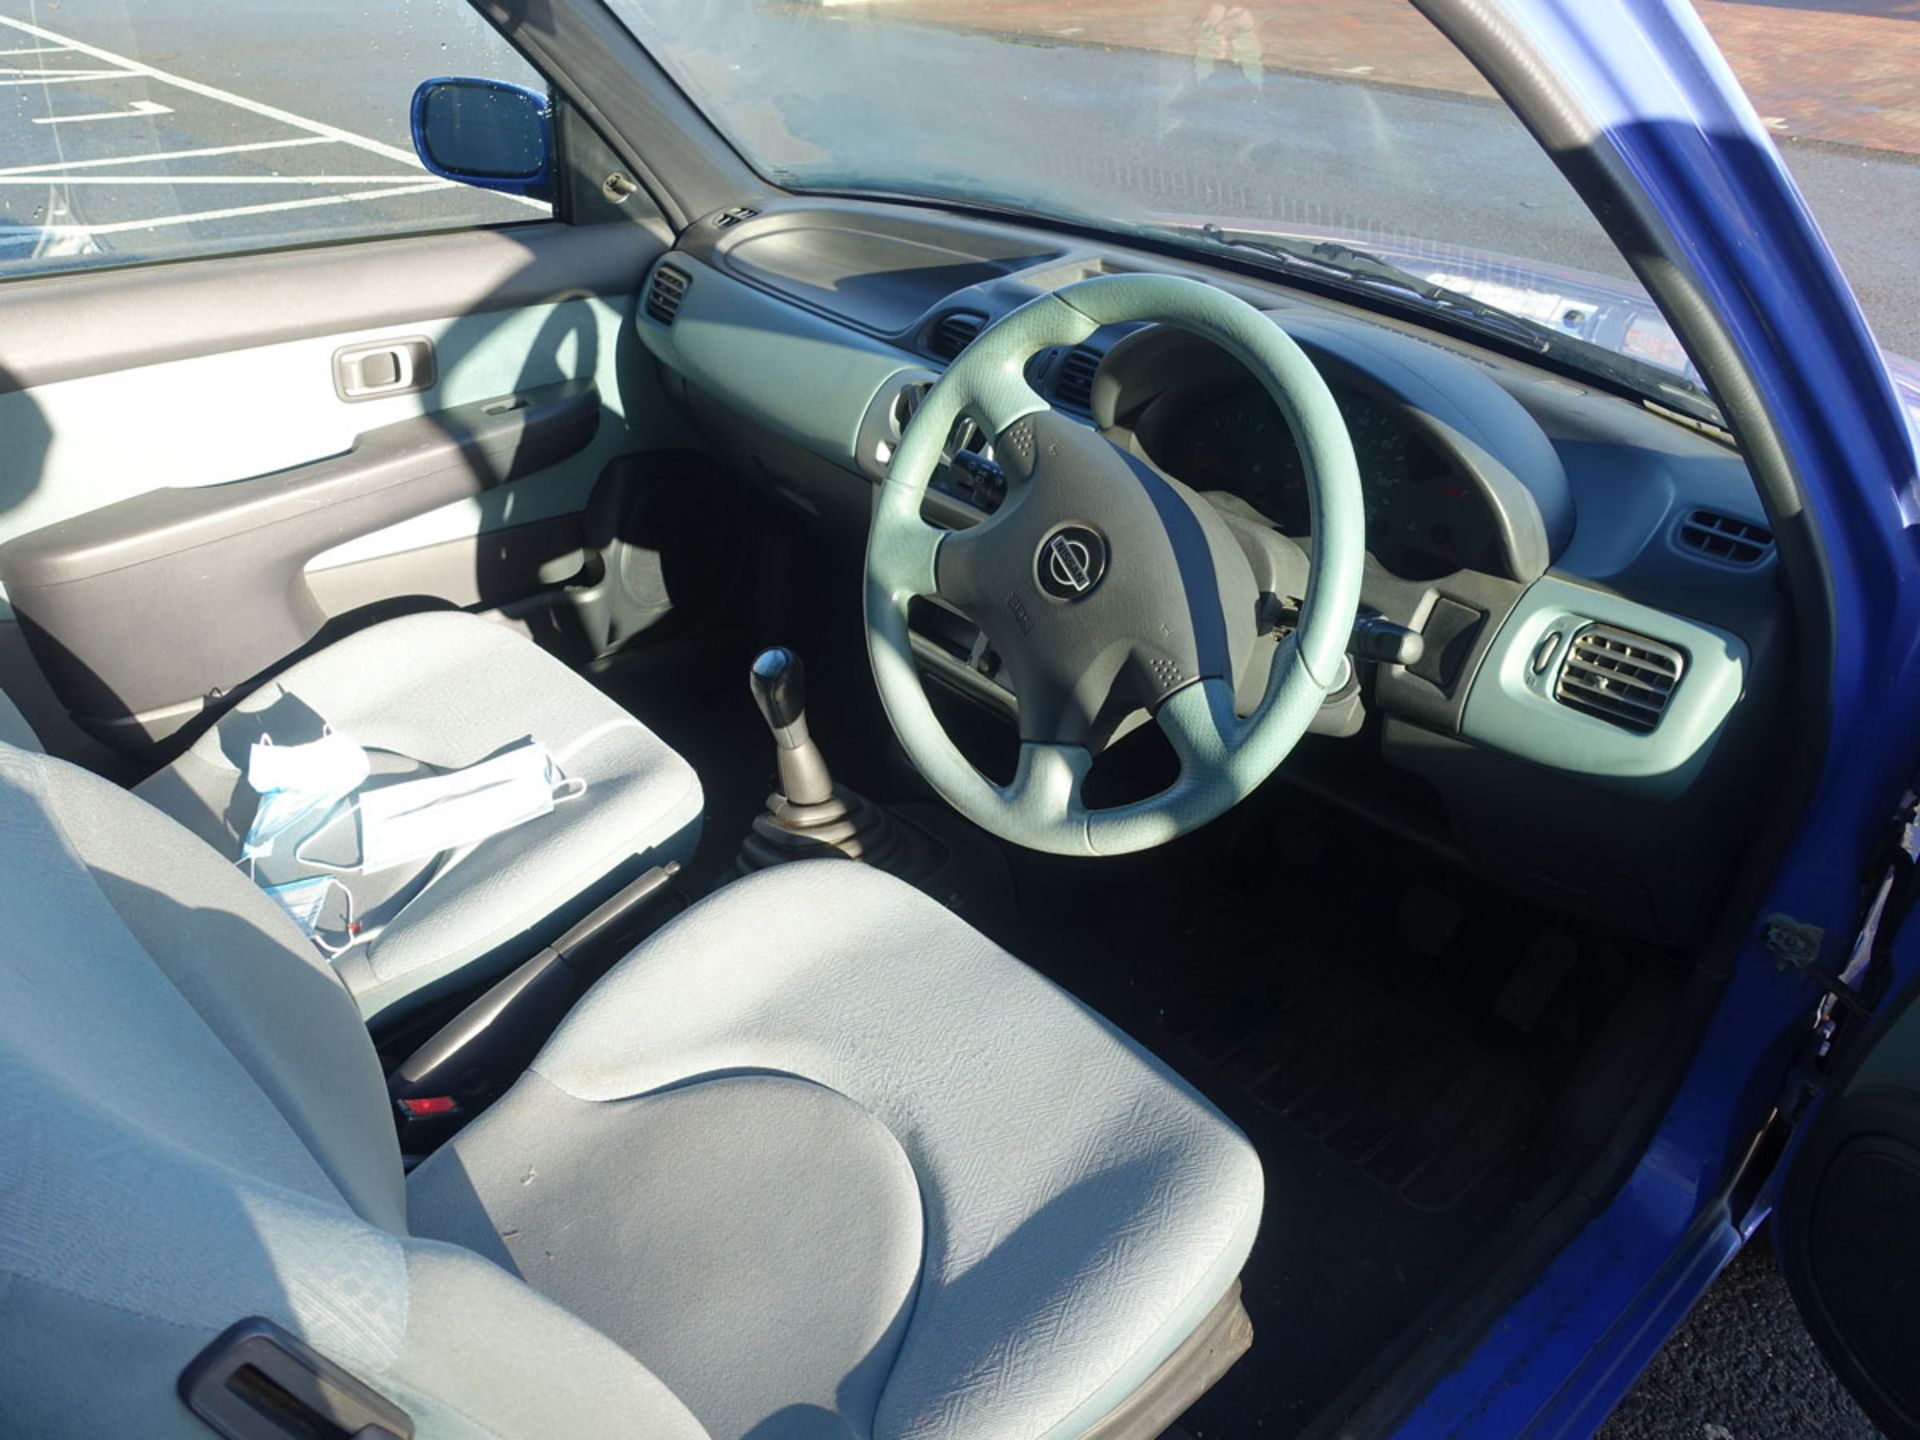 Y628 PTM (2001) Nissan Micra Activ 3 door hatchback, petrol in blue MOT: 12/7/2021 - Image 6 of 9